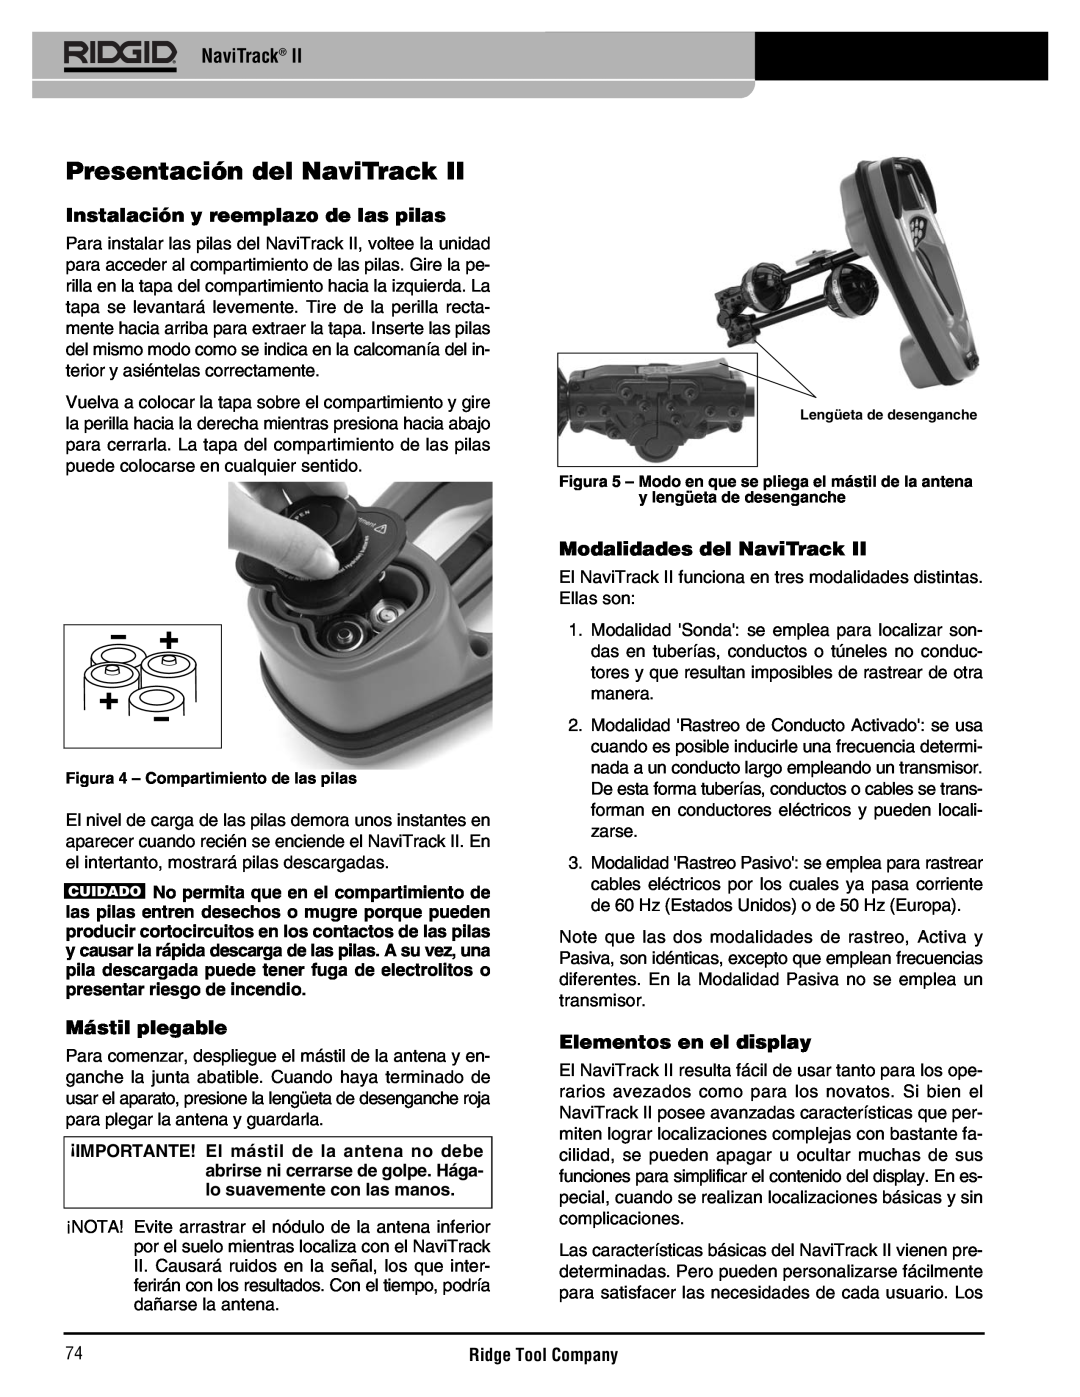 RIDGID Metal Detector manual Presentación del NaviTrack, Instalación y reemplazo de las pilas, Mástil plegable 